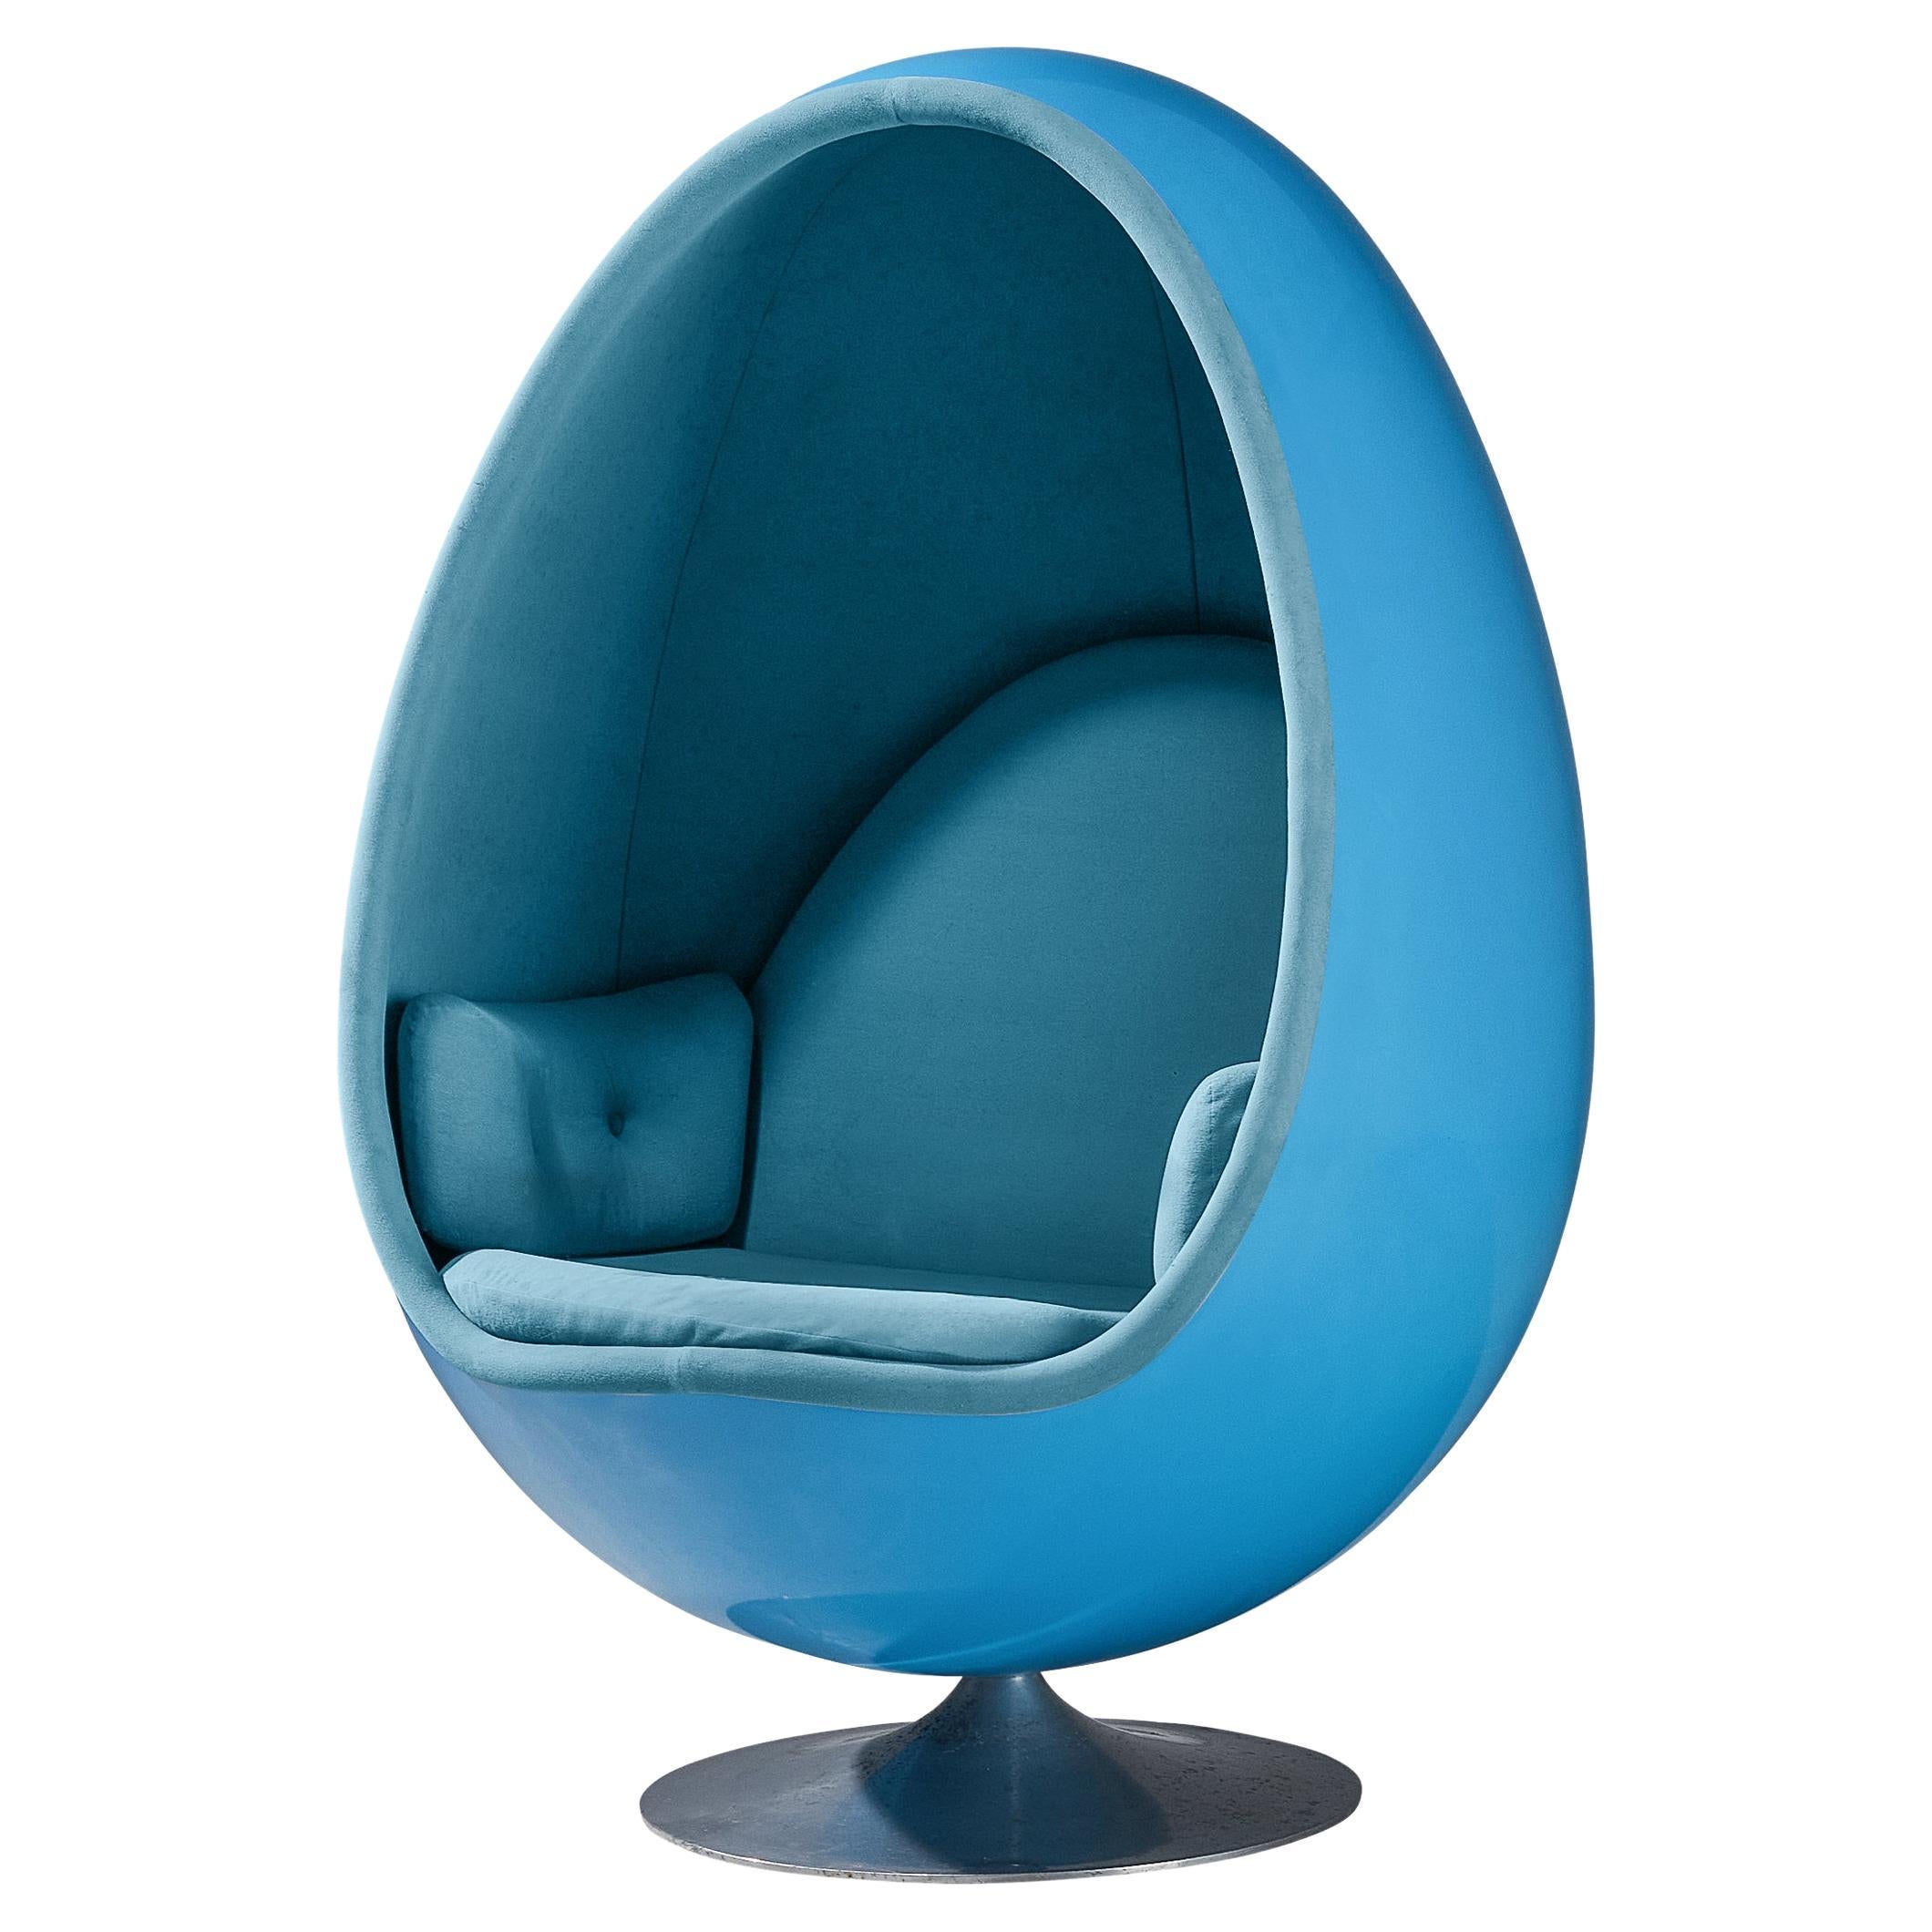 Thor Larsen for Torlan Staffanstorp 'Ovalia' Egg Chair in Blue Fiberglass  For Sale